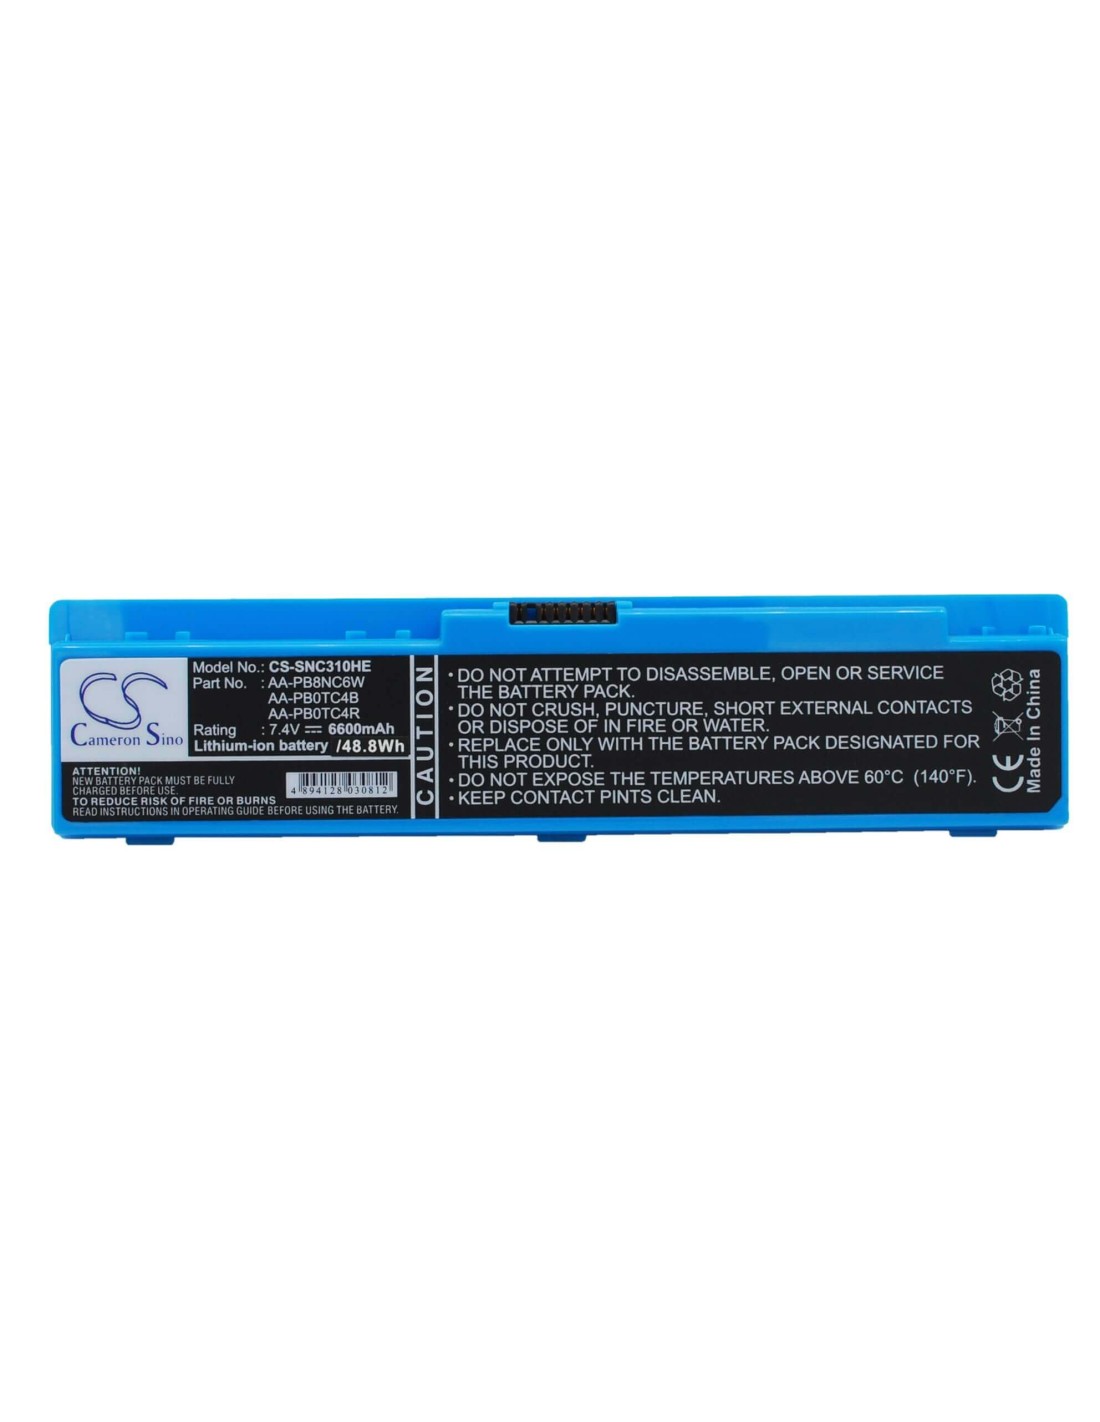 Battery for Samsung Np-n310, Np-n310-ka03, Np-n310-ka04 7.4V, 6600mAh - 48.84Wh